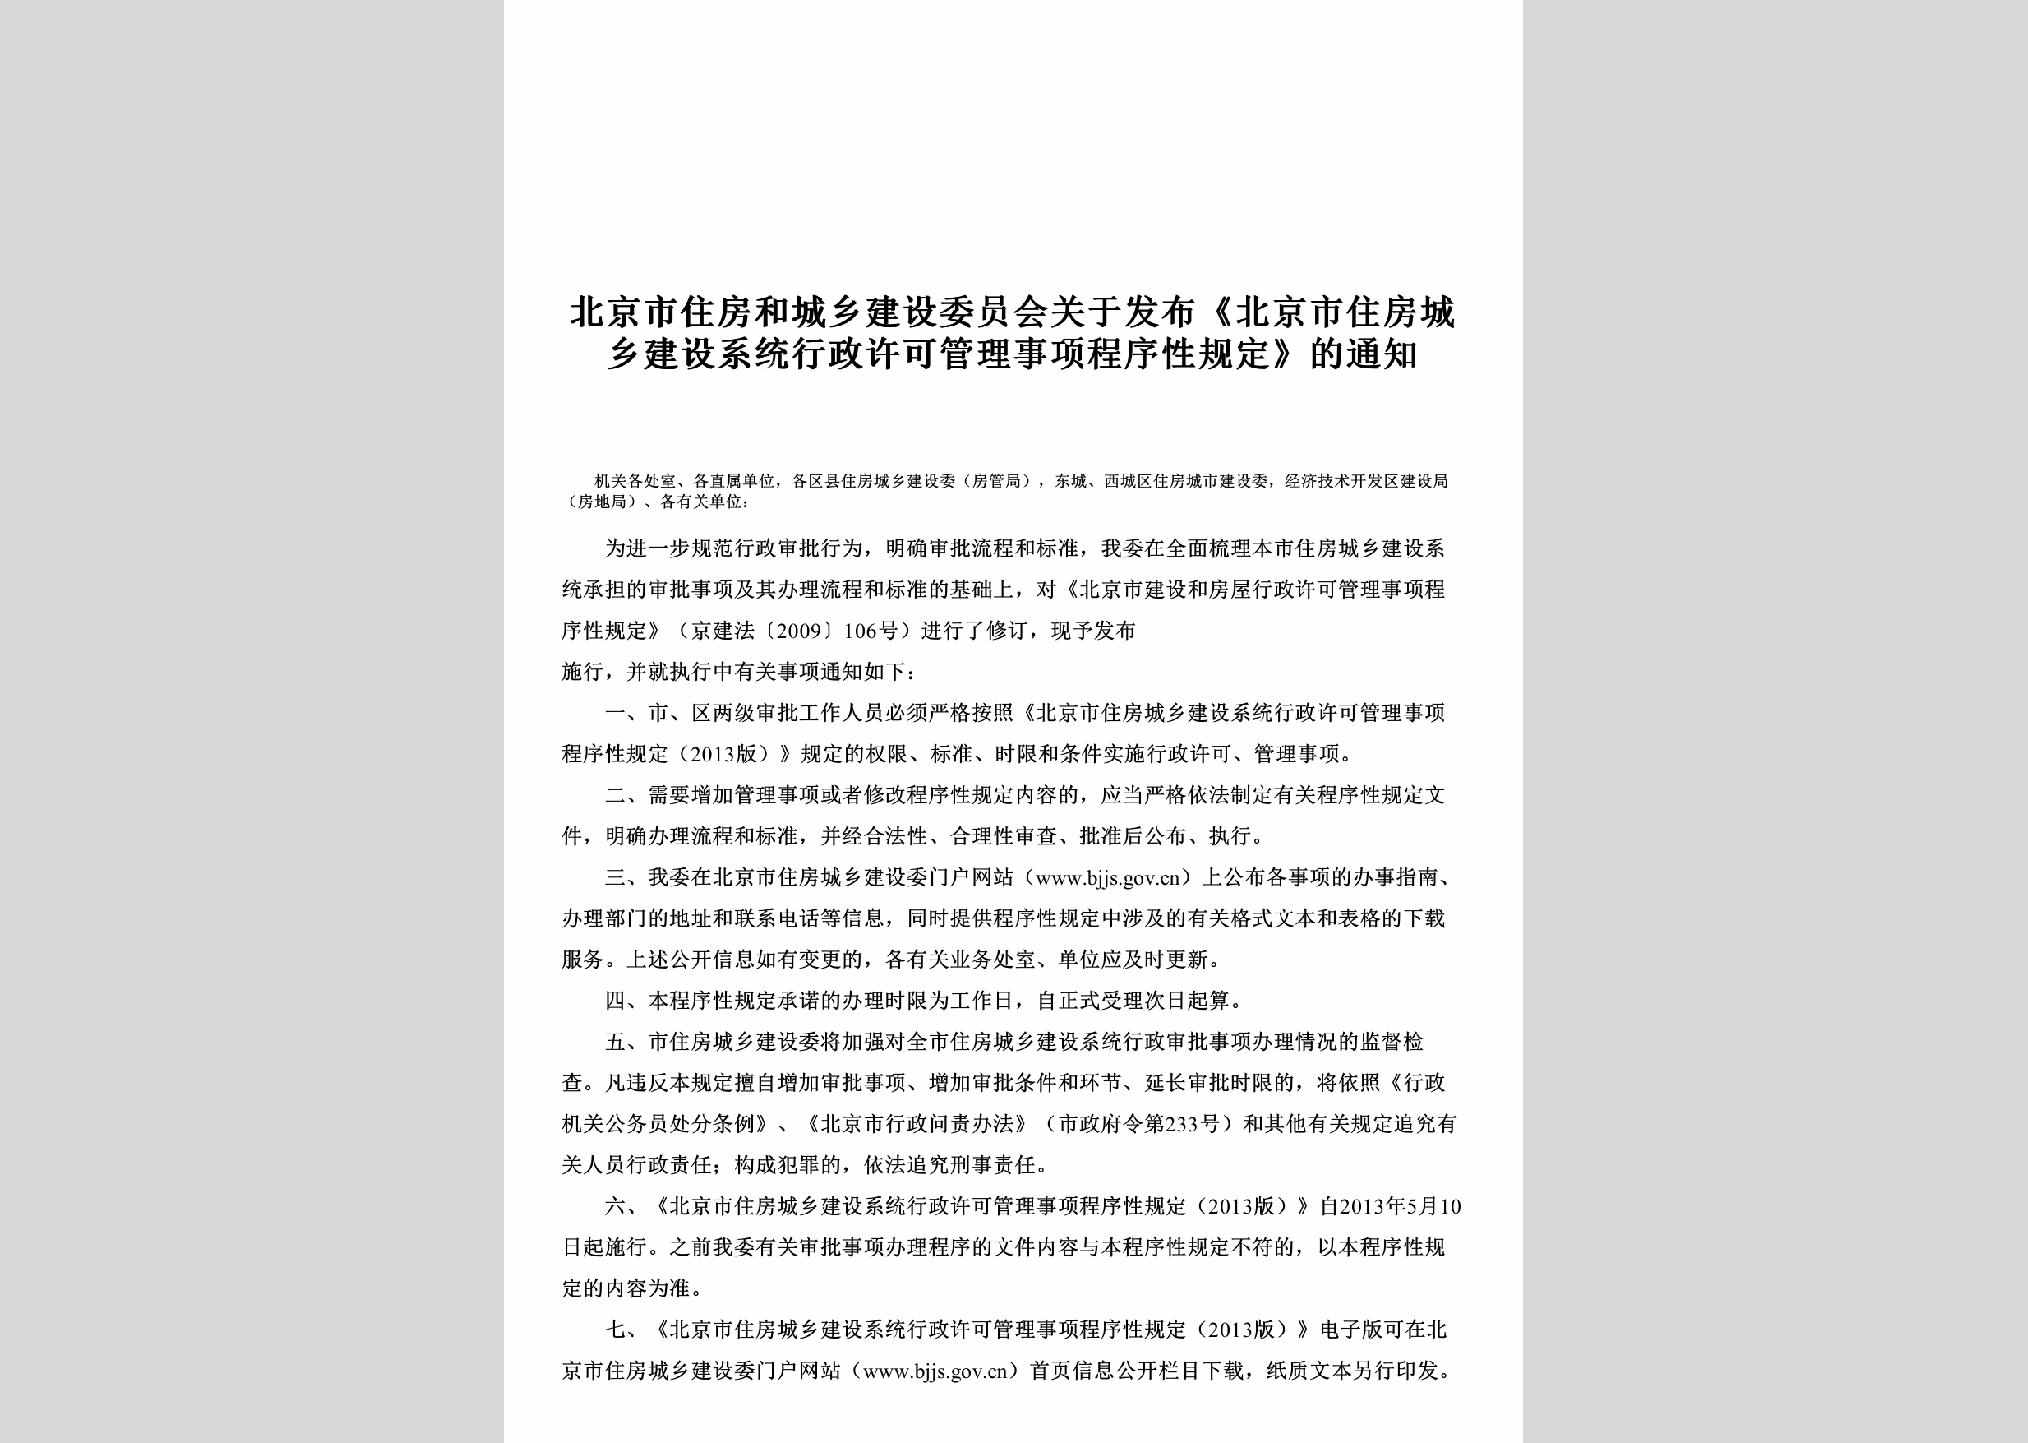 BJ-ZFJSGLSX-2013：关于发布《北京市住房城乡建设系统行政许可管理事项程序性规定》的通知